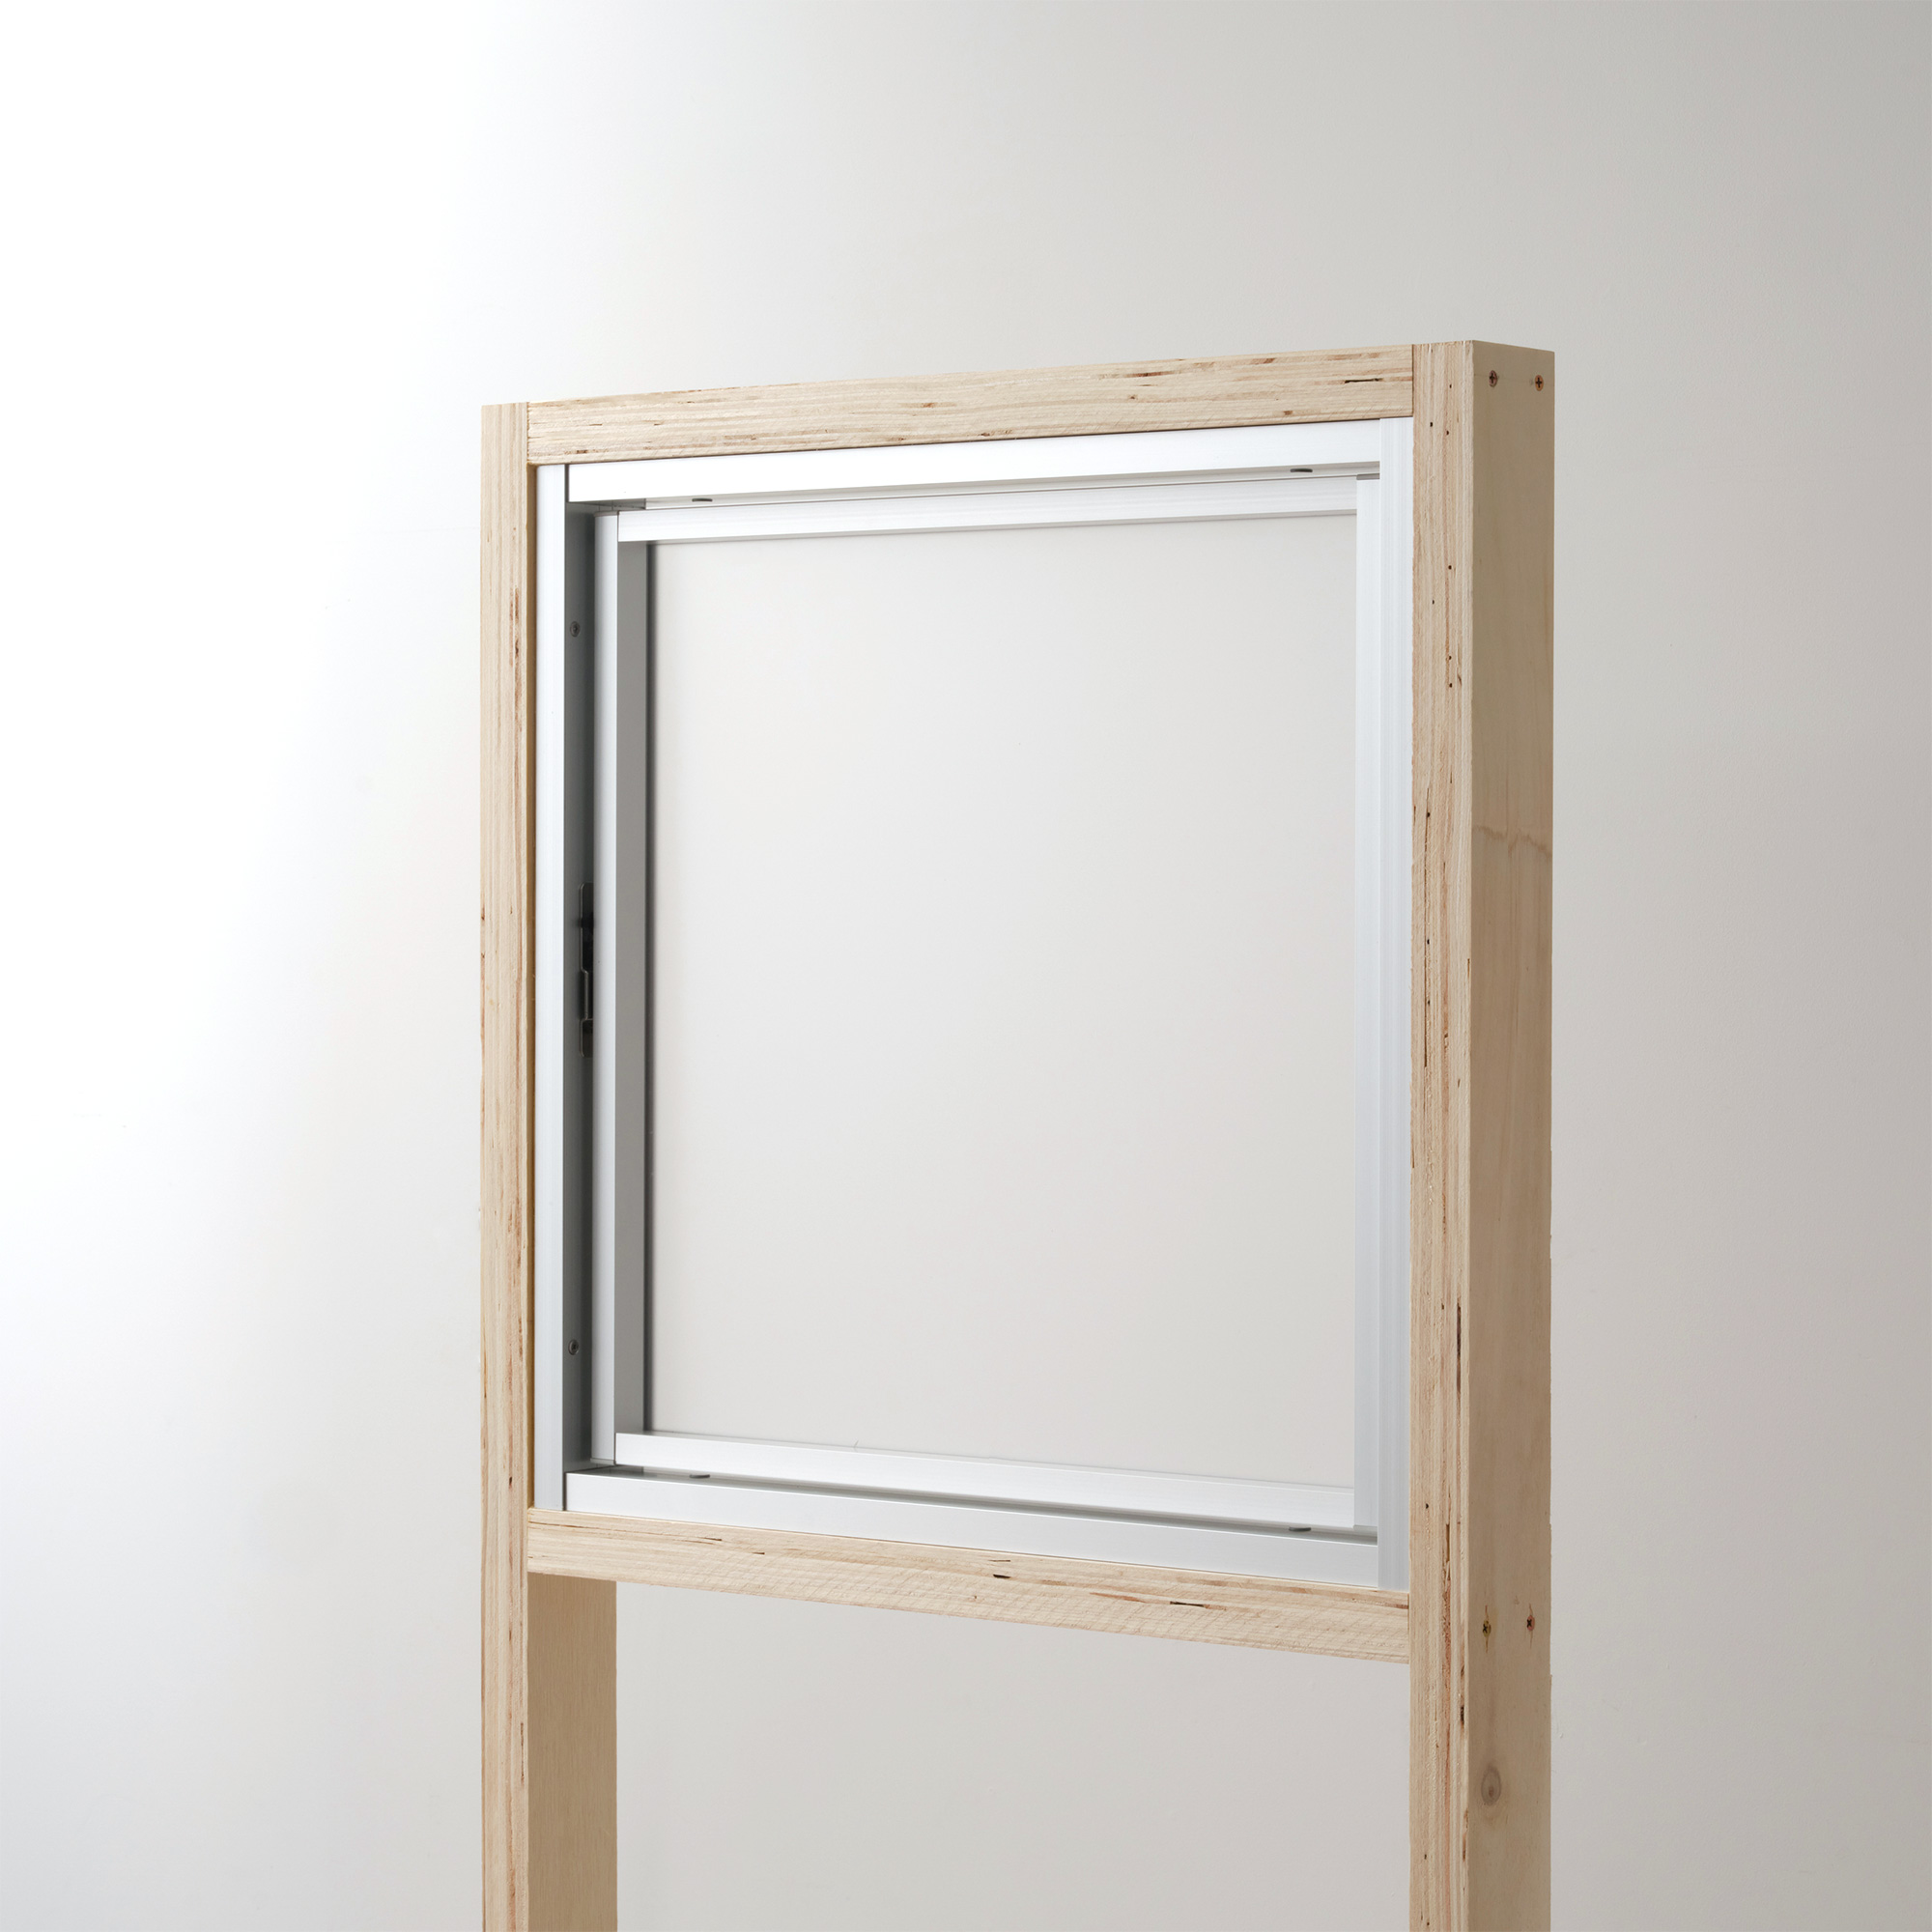 室内アルミサッシ FIX窓＋FIX窓 シルバー 樹脂パネル DW-DR013-12-G201 回転窓 W500 H500 マット樹脂パネル